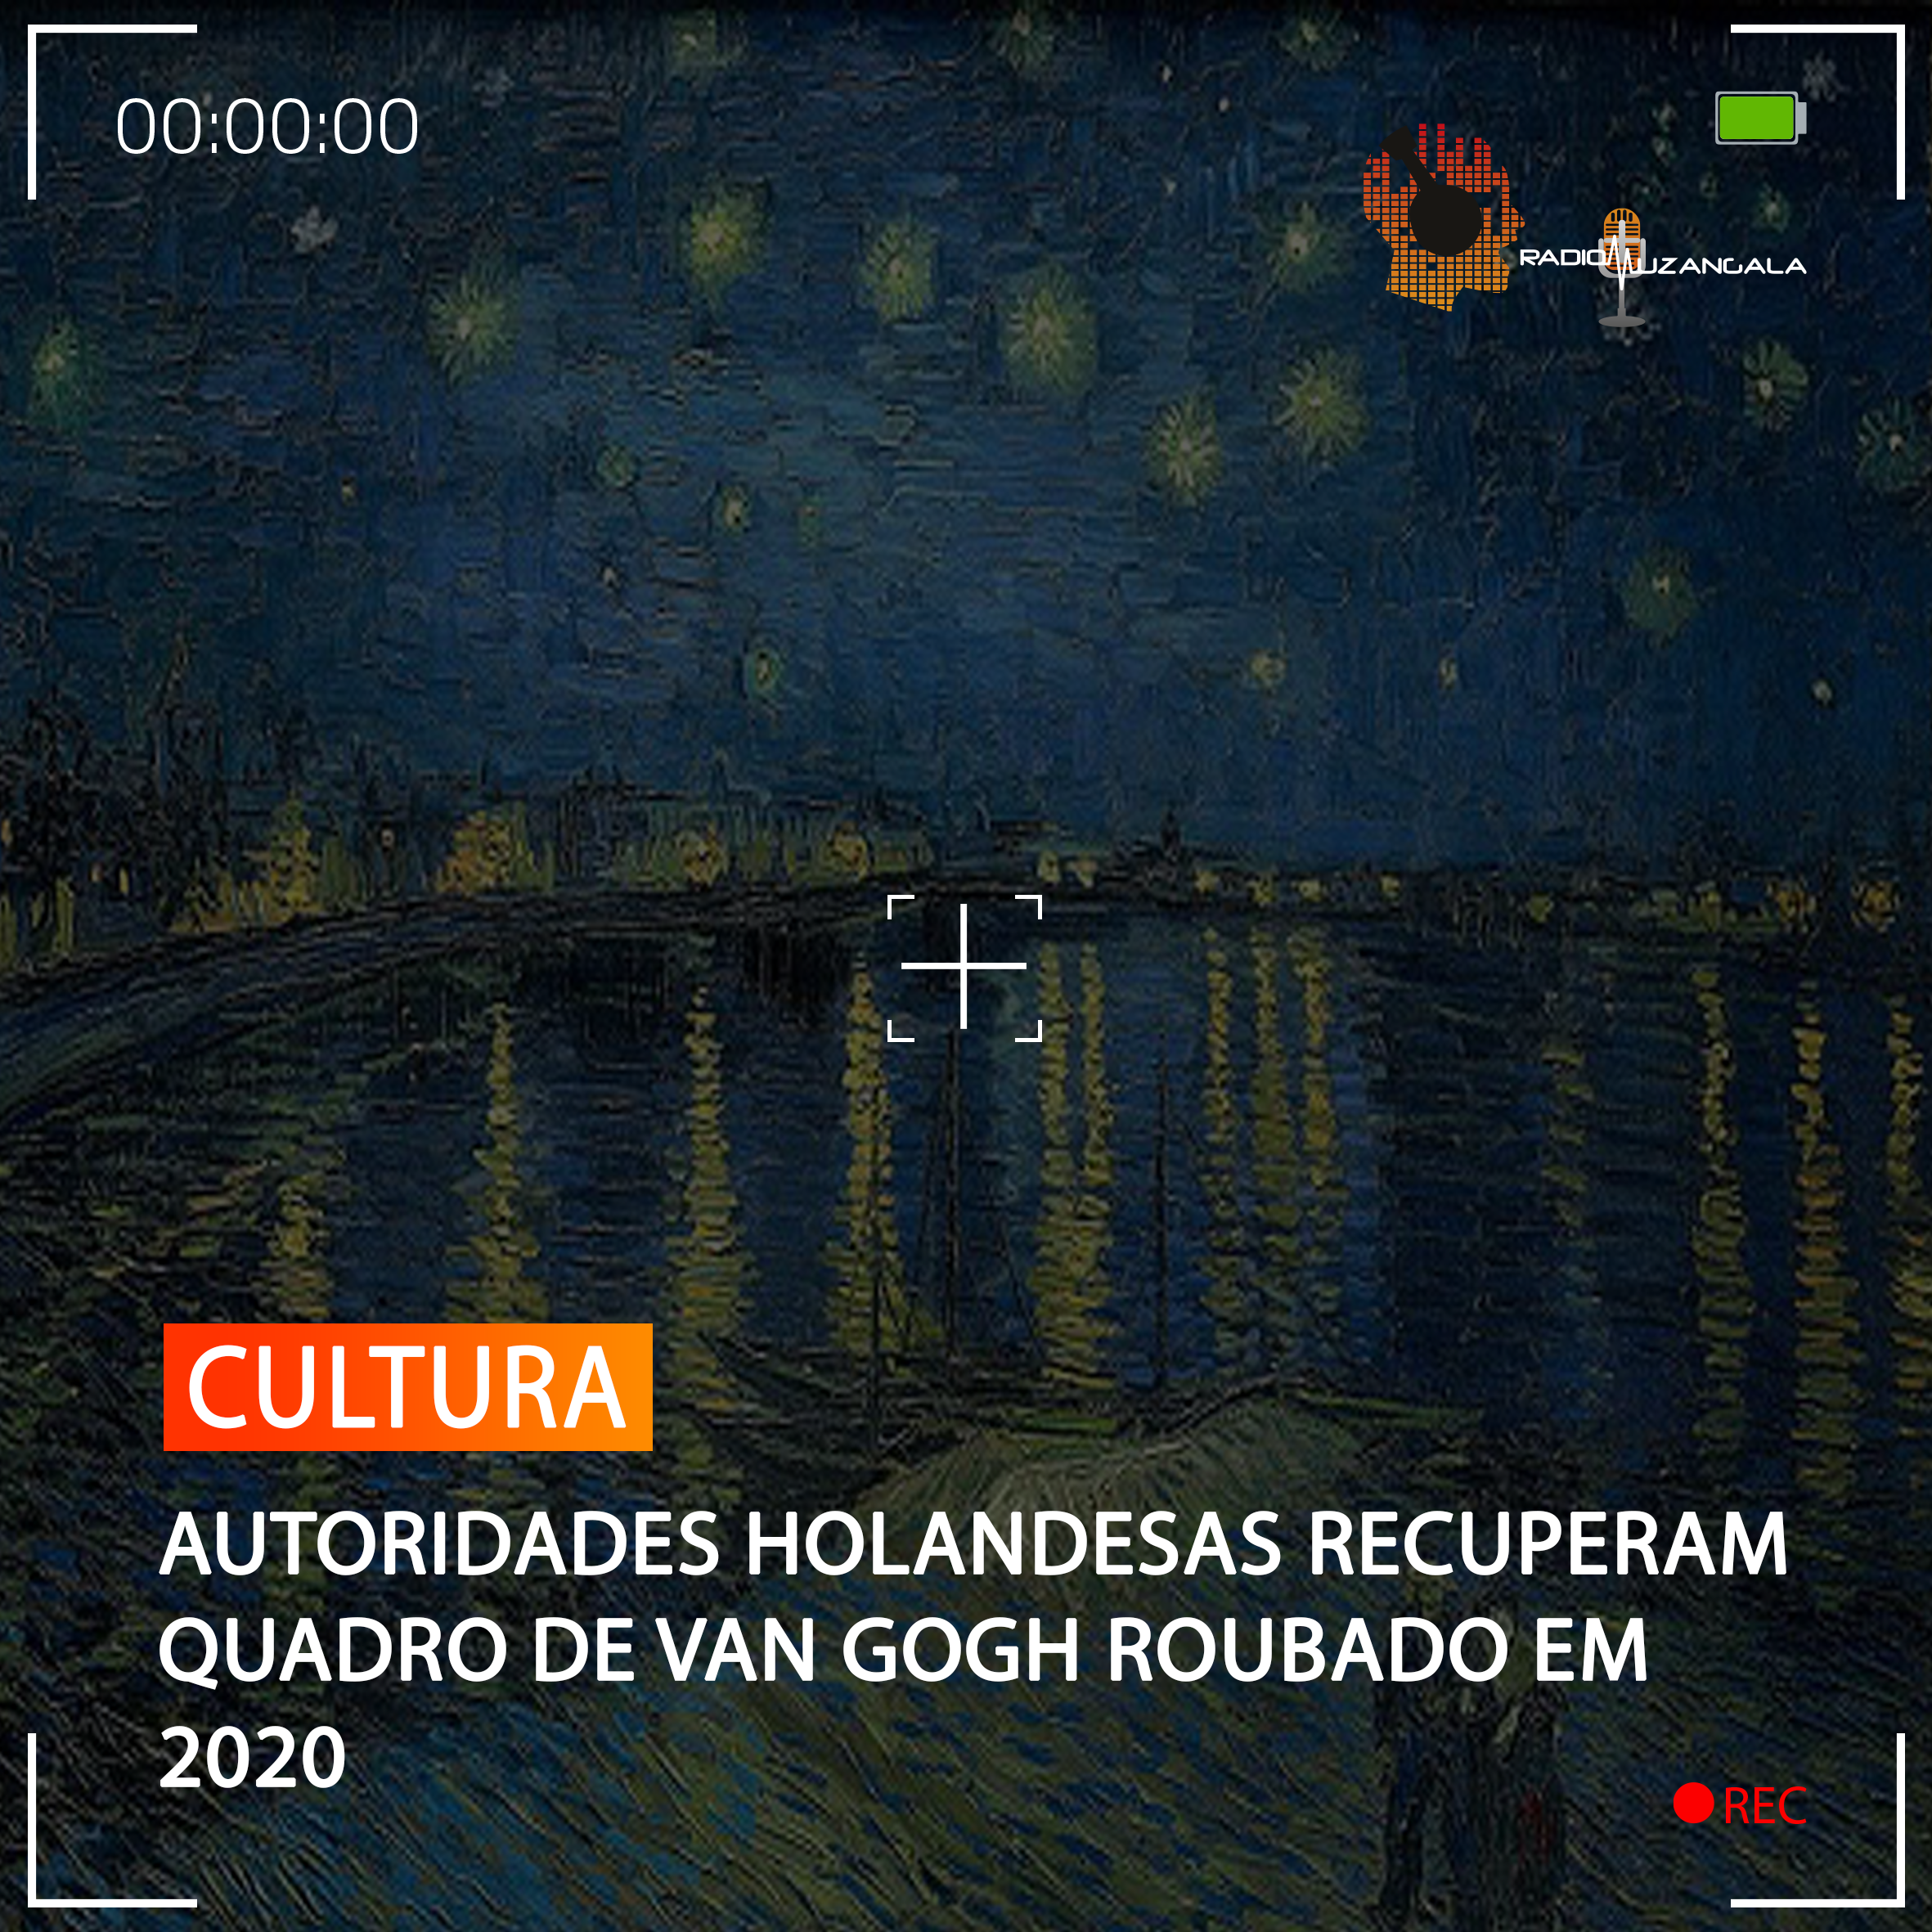  AUTORIDADES HOLANDESAS RECUPERAM QUADRO DE VAN GOGH ROUBADO EM 2020